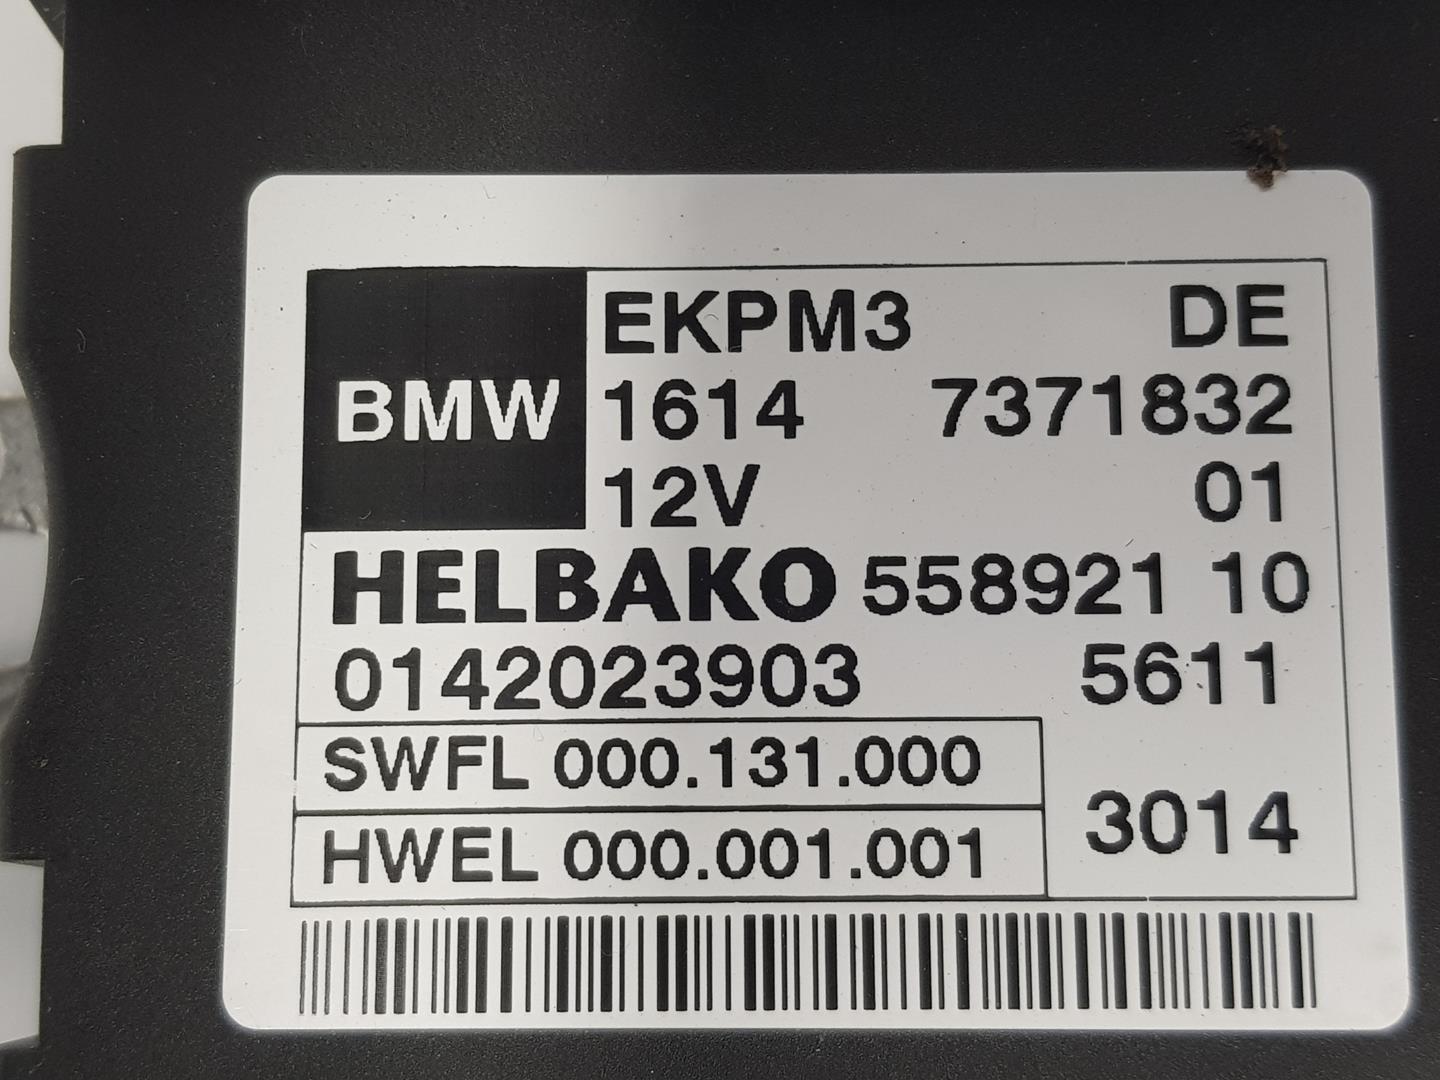 BMW 4 Series F32/F33/F36 (2013-2020) Polttoainepumpun ohjausyksikkö 16147371832, 7371832 24124561